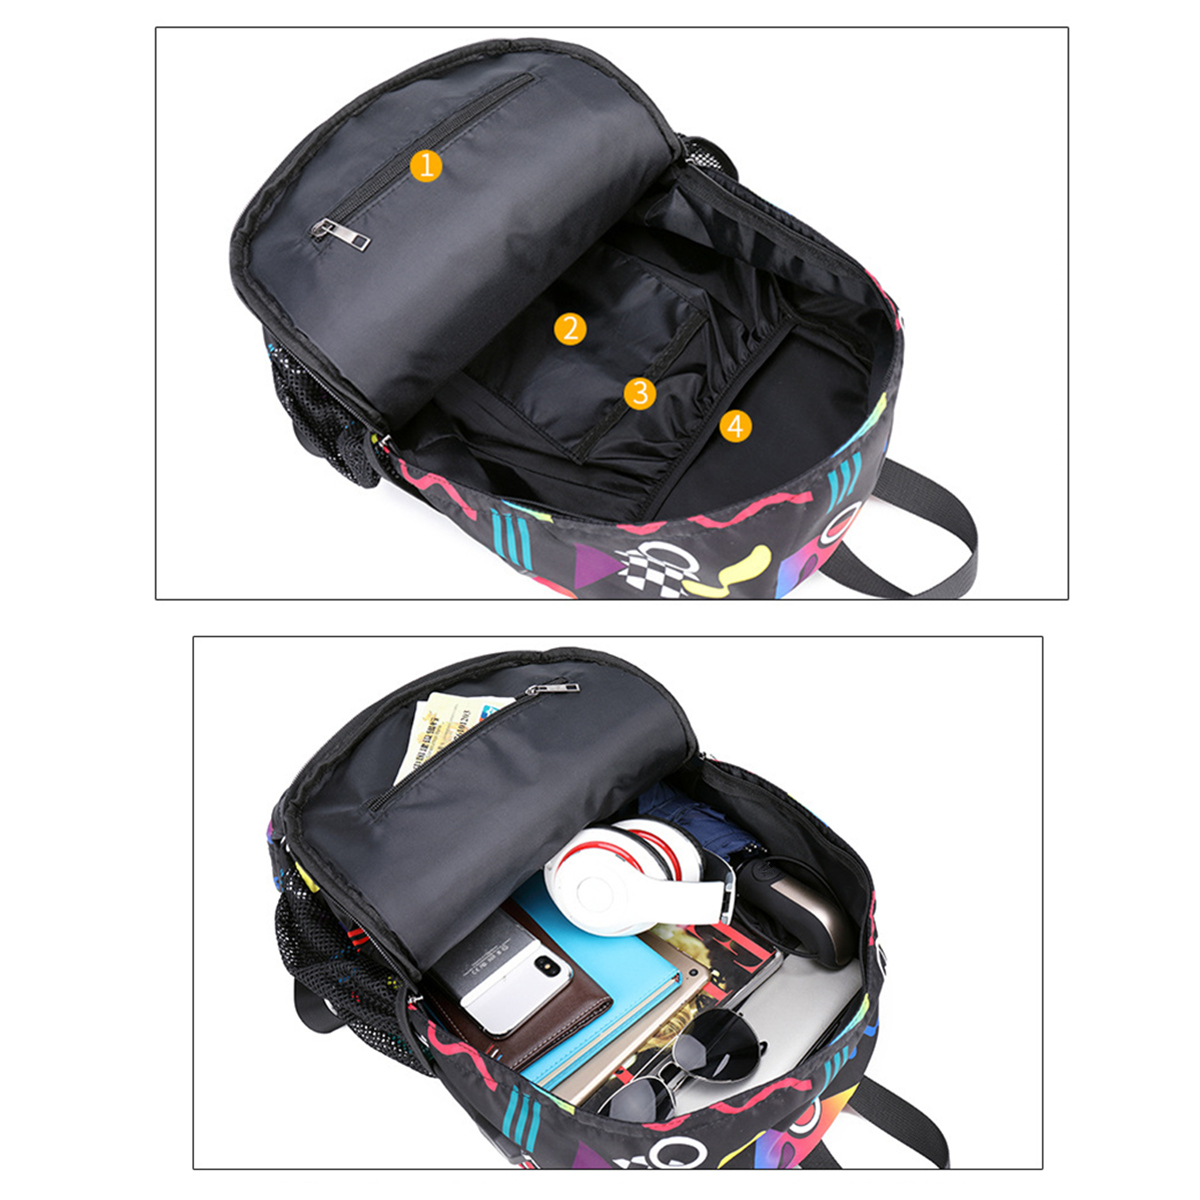 BIKIGHT-Men-Smart-Sound-Control-Noctilucent-Backpack-USB-Charge-Laptop-Travel-School-Bag-1403629